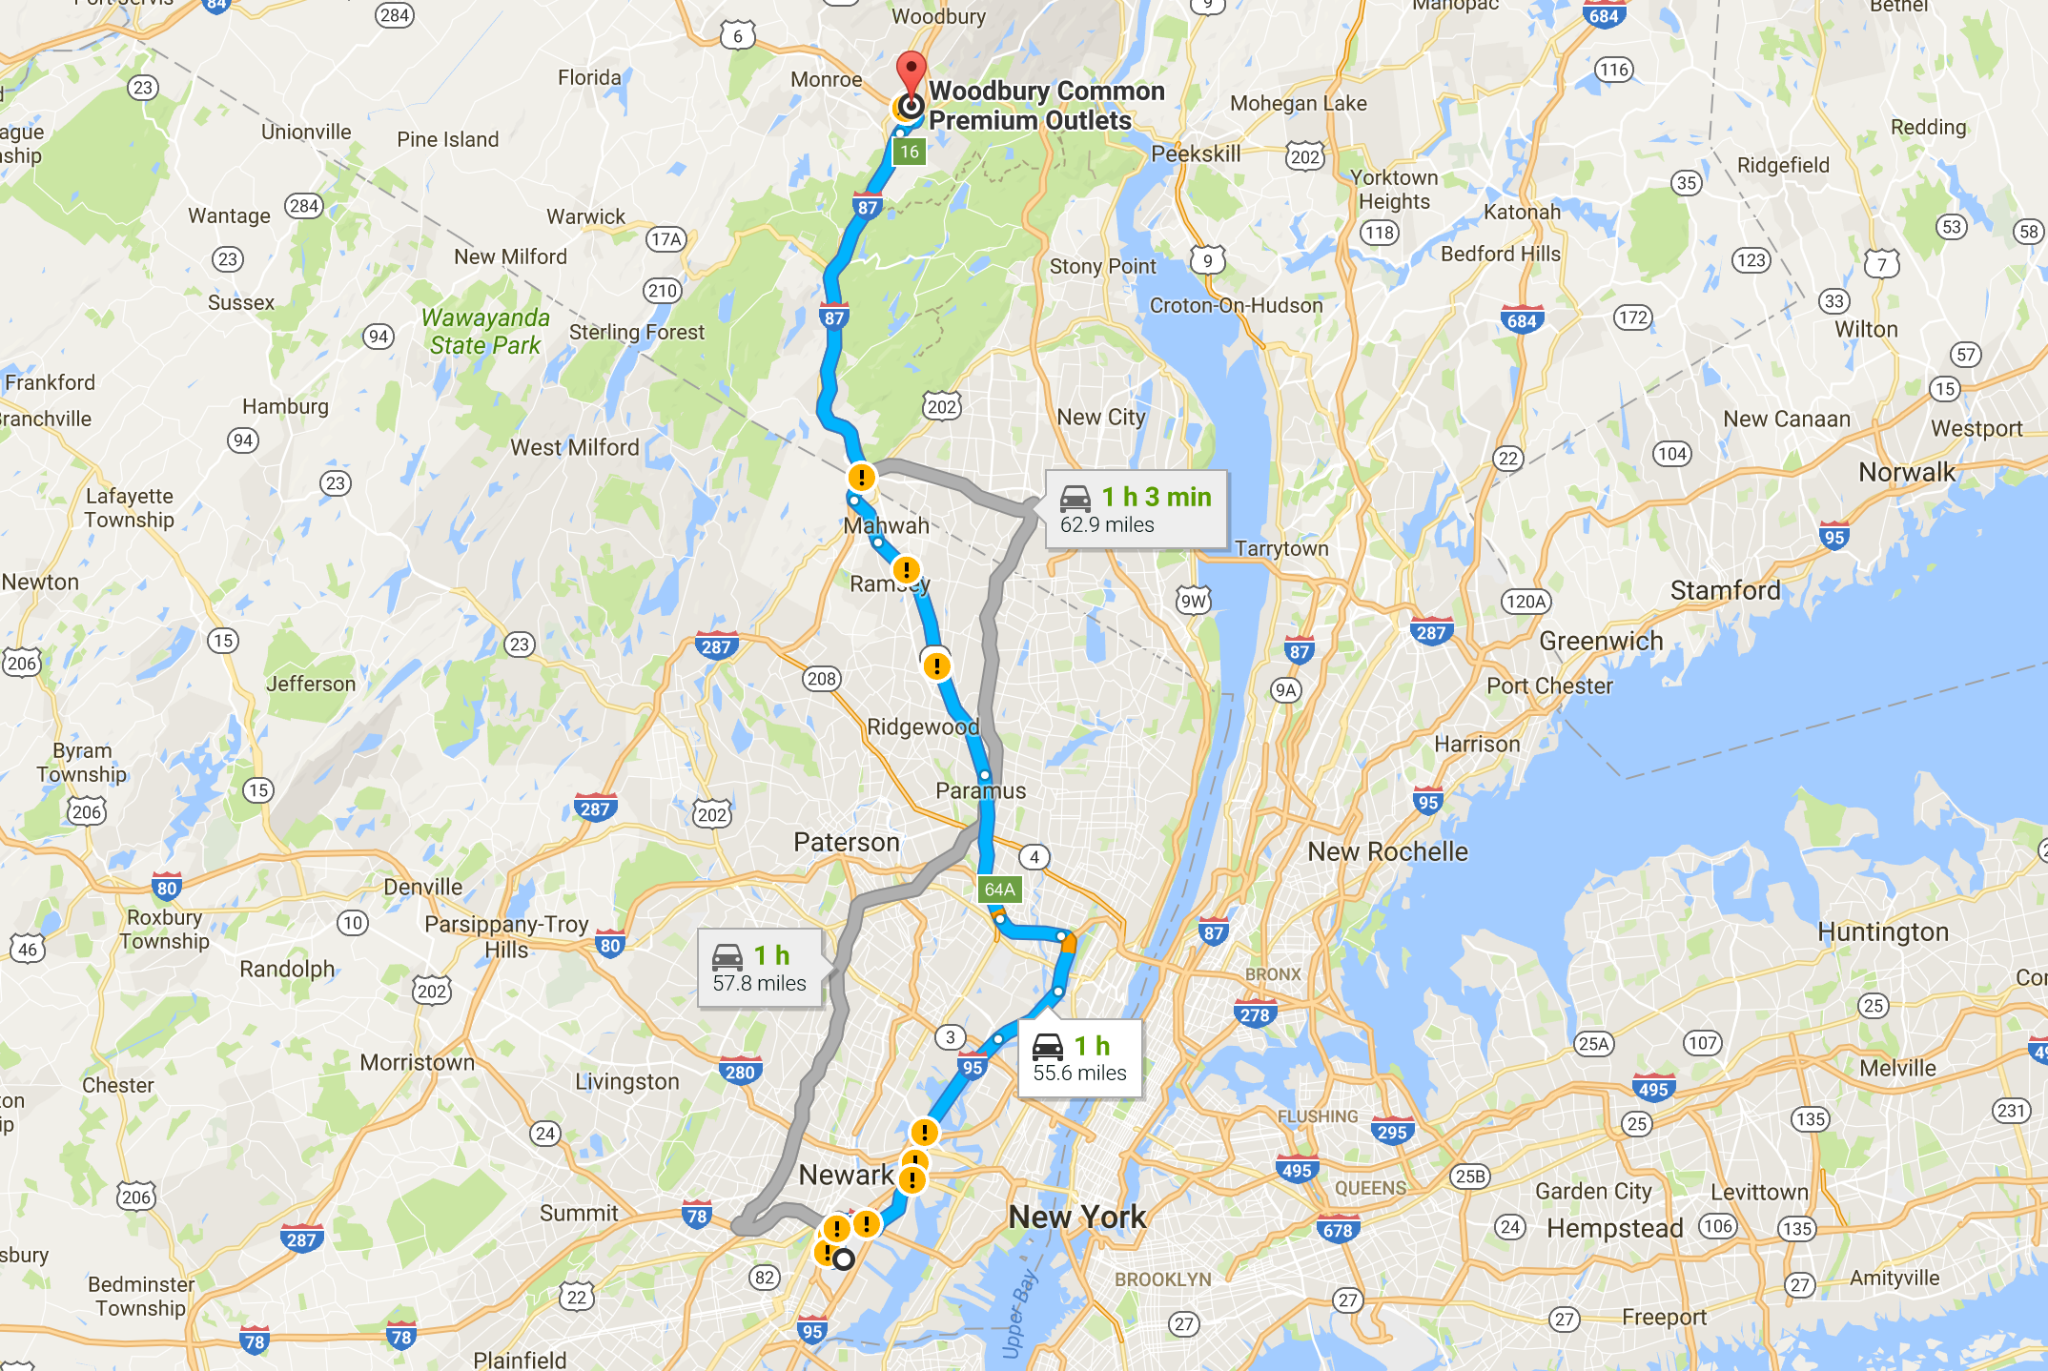 纽约纽瓦克机场租车去woodbury走那条路 过路费大概多少钱?